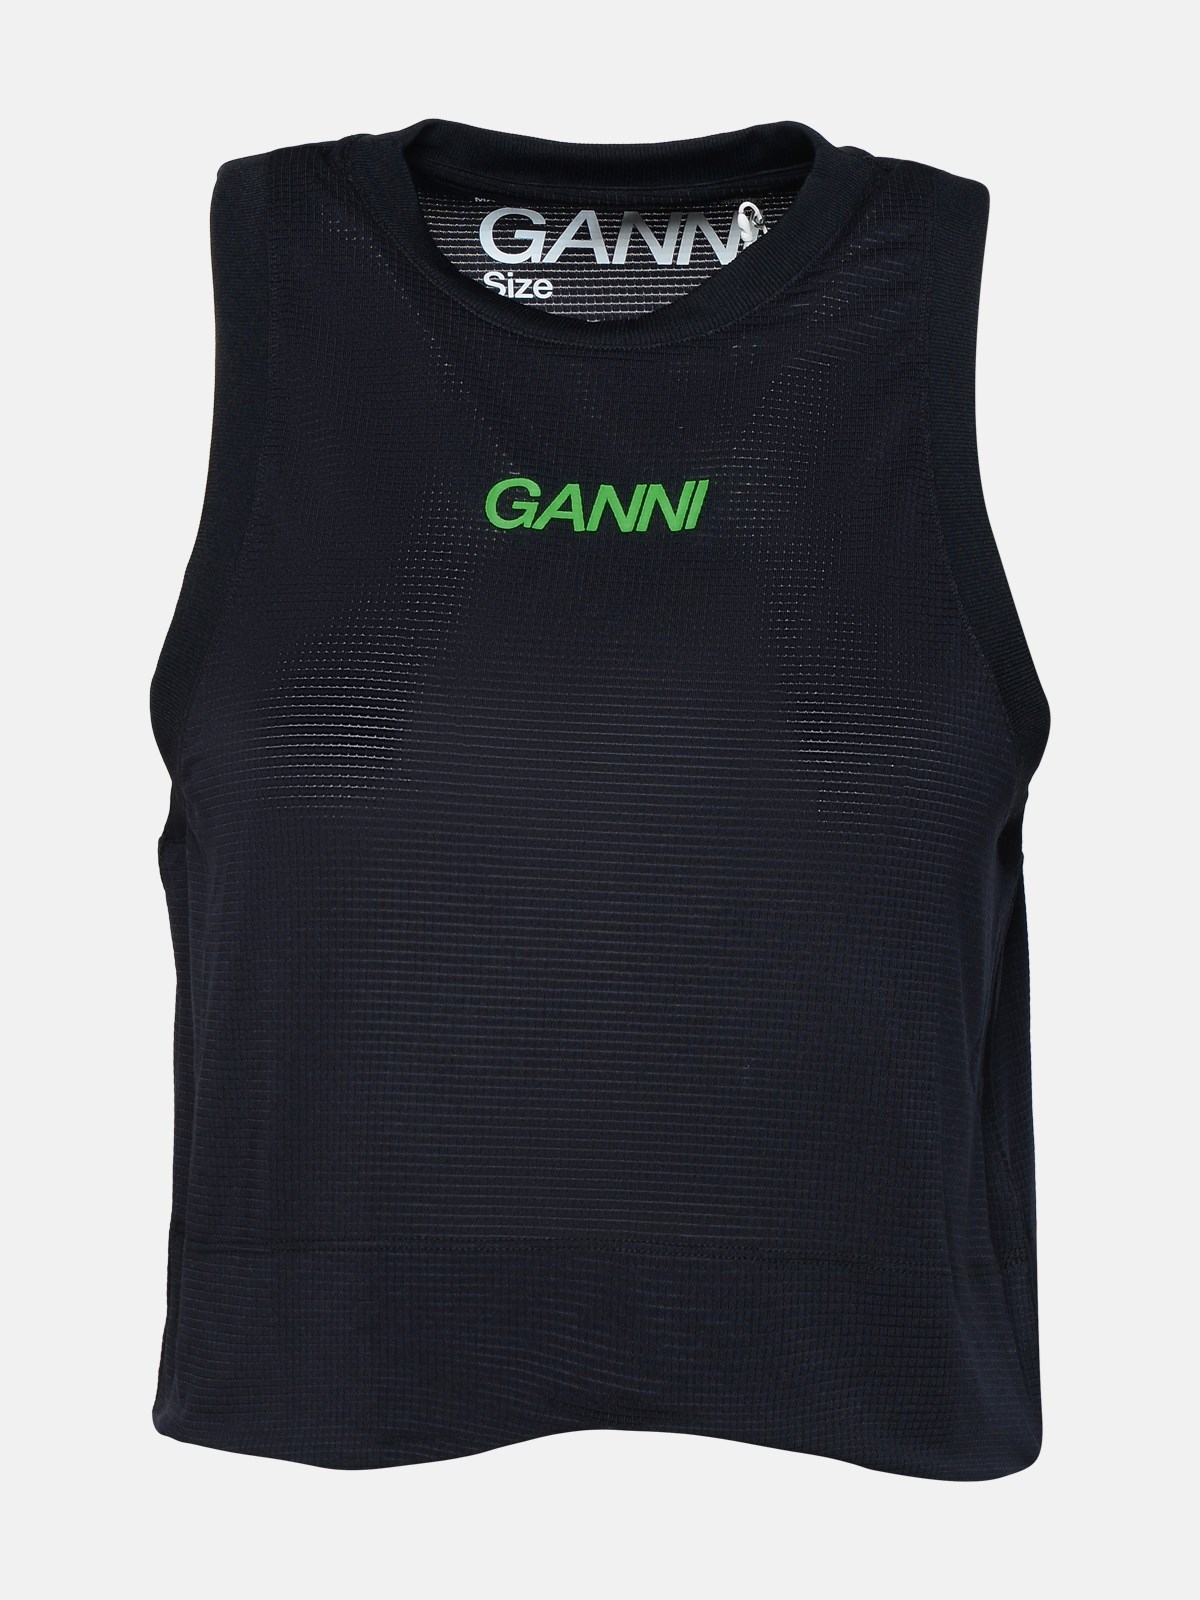 Ganni Top Active In Black